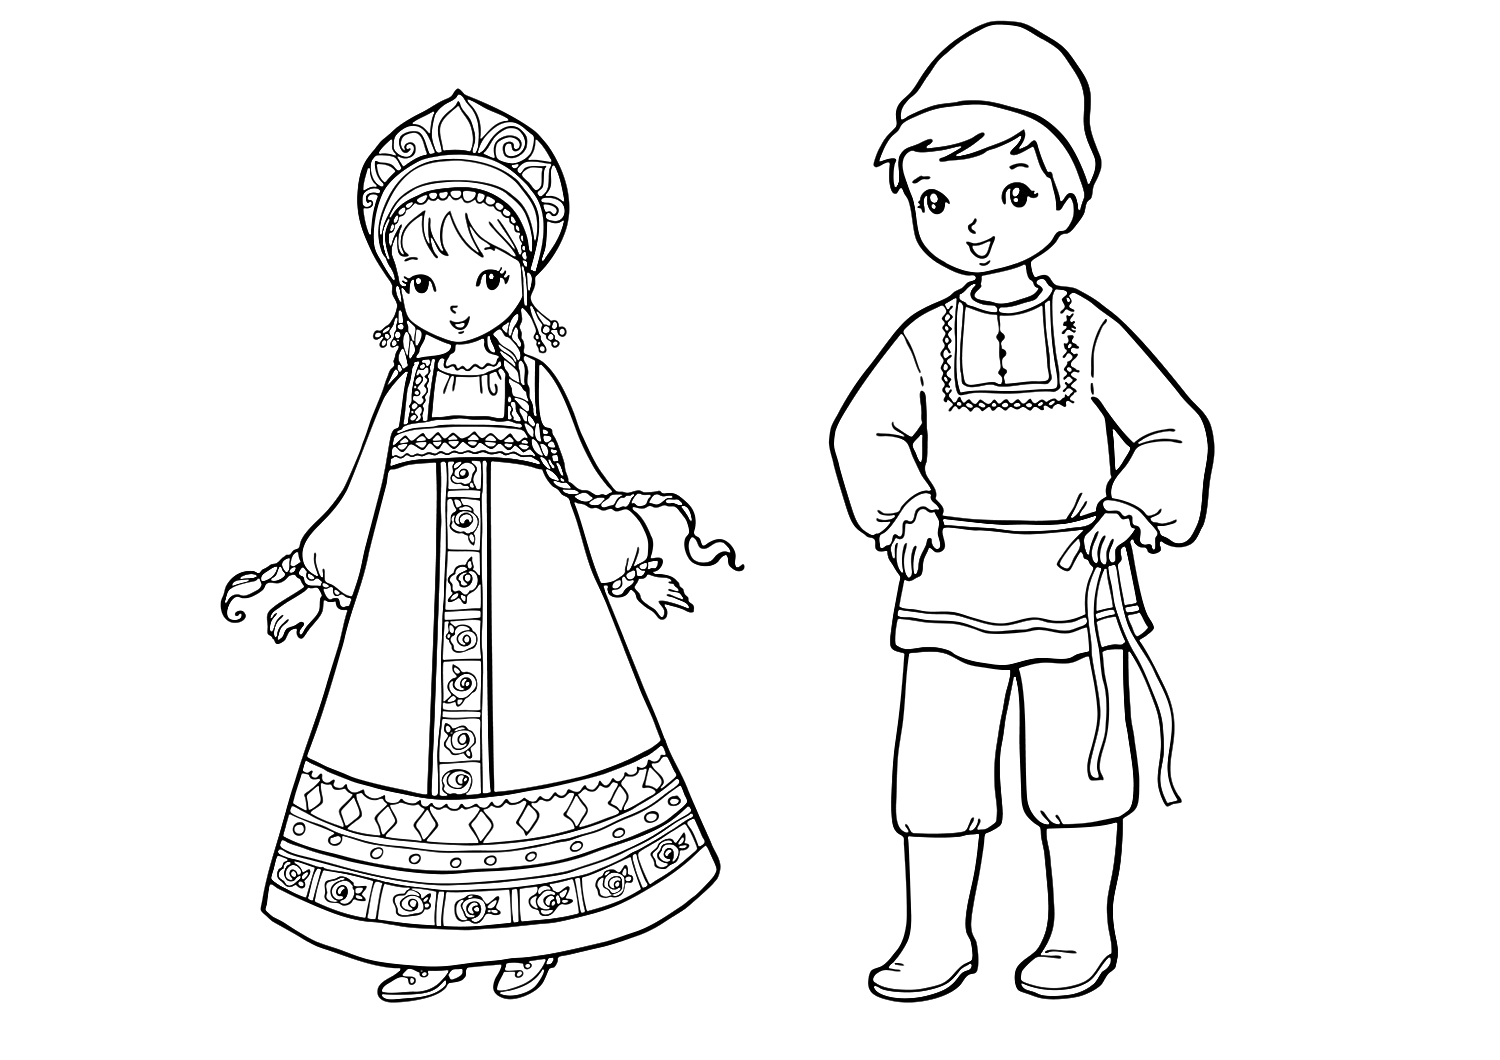 Русские народные костюмы - девочка в сарафане с кокошником и мальчик в рубахе с кушаком и сапогах